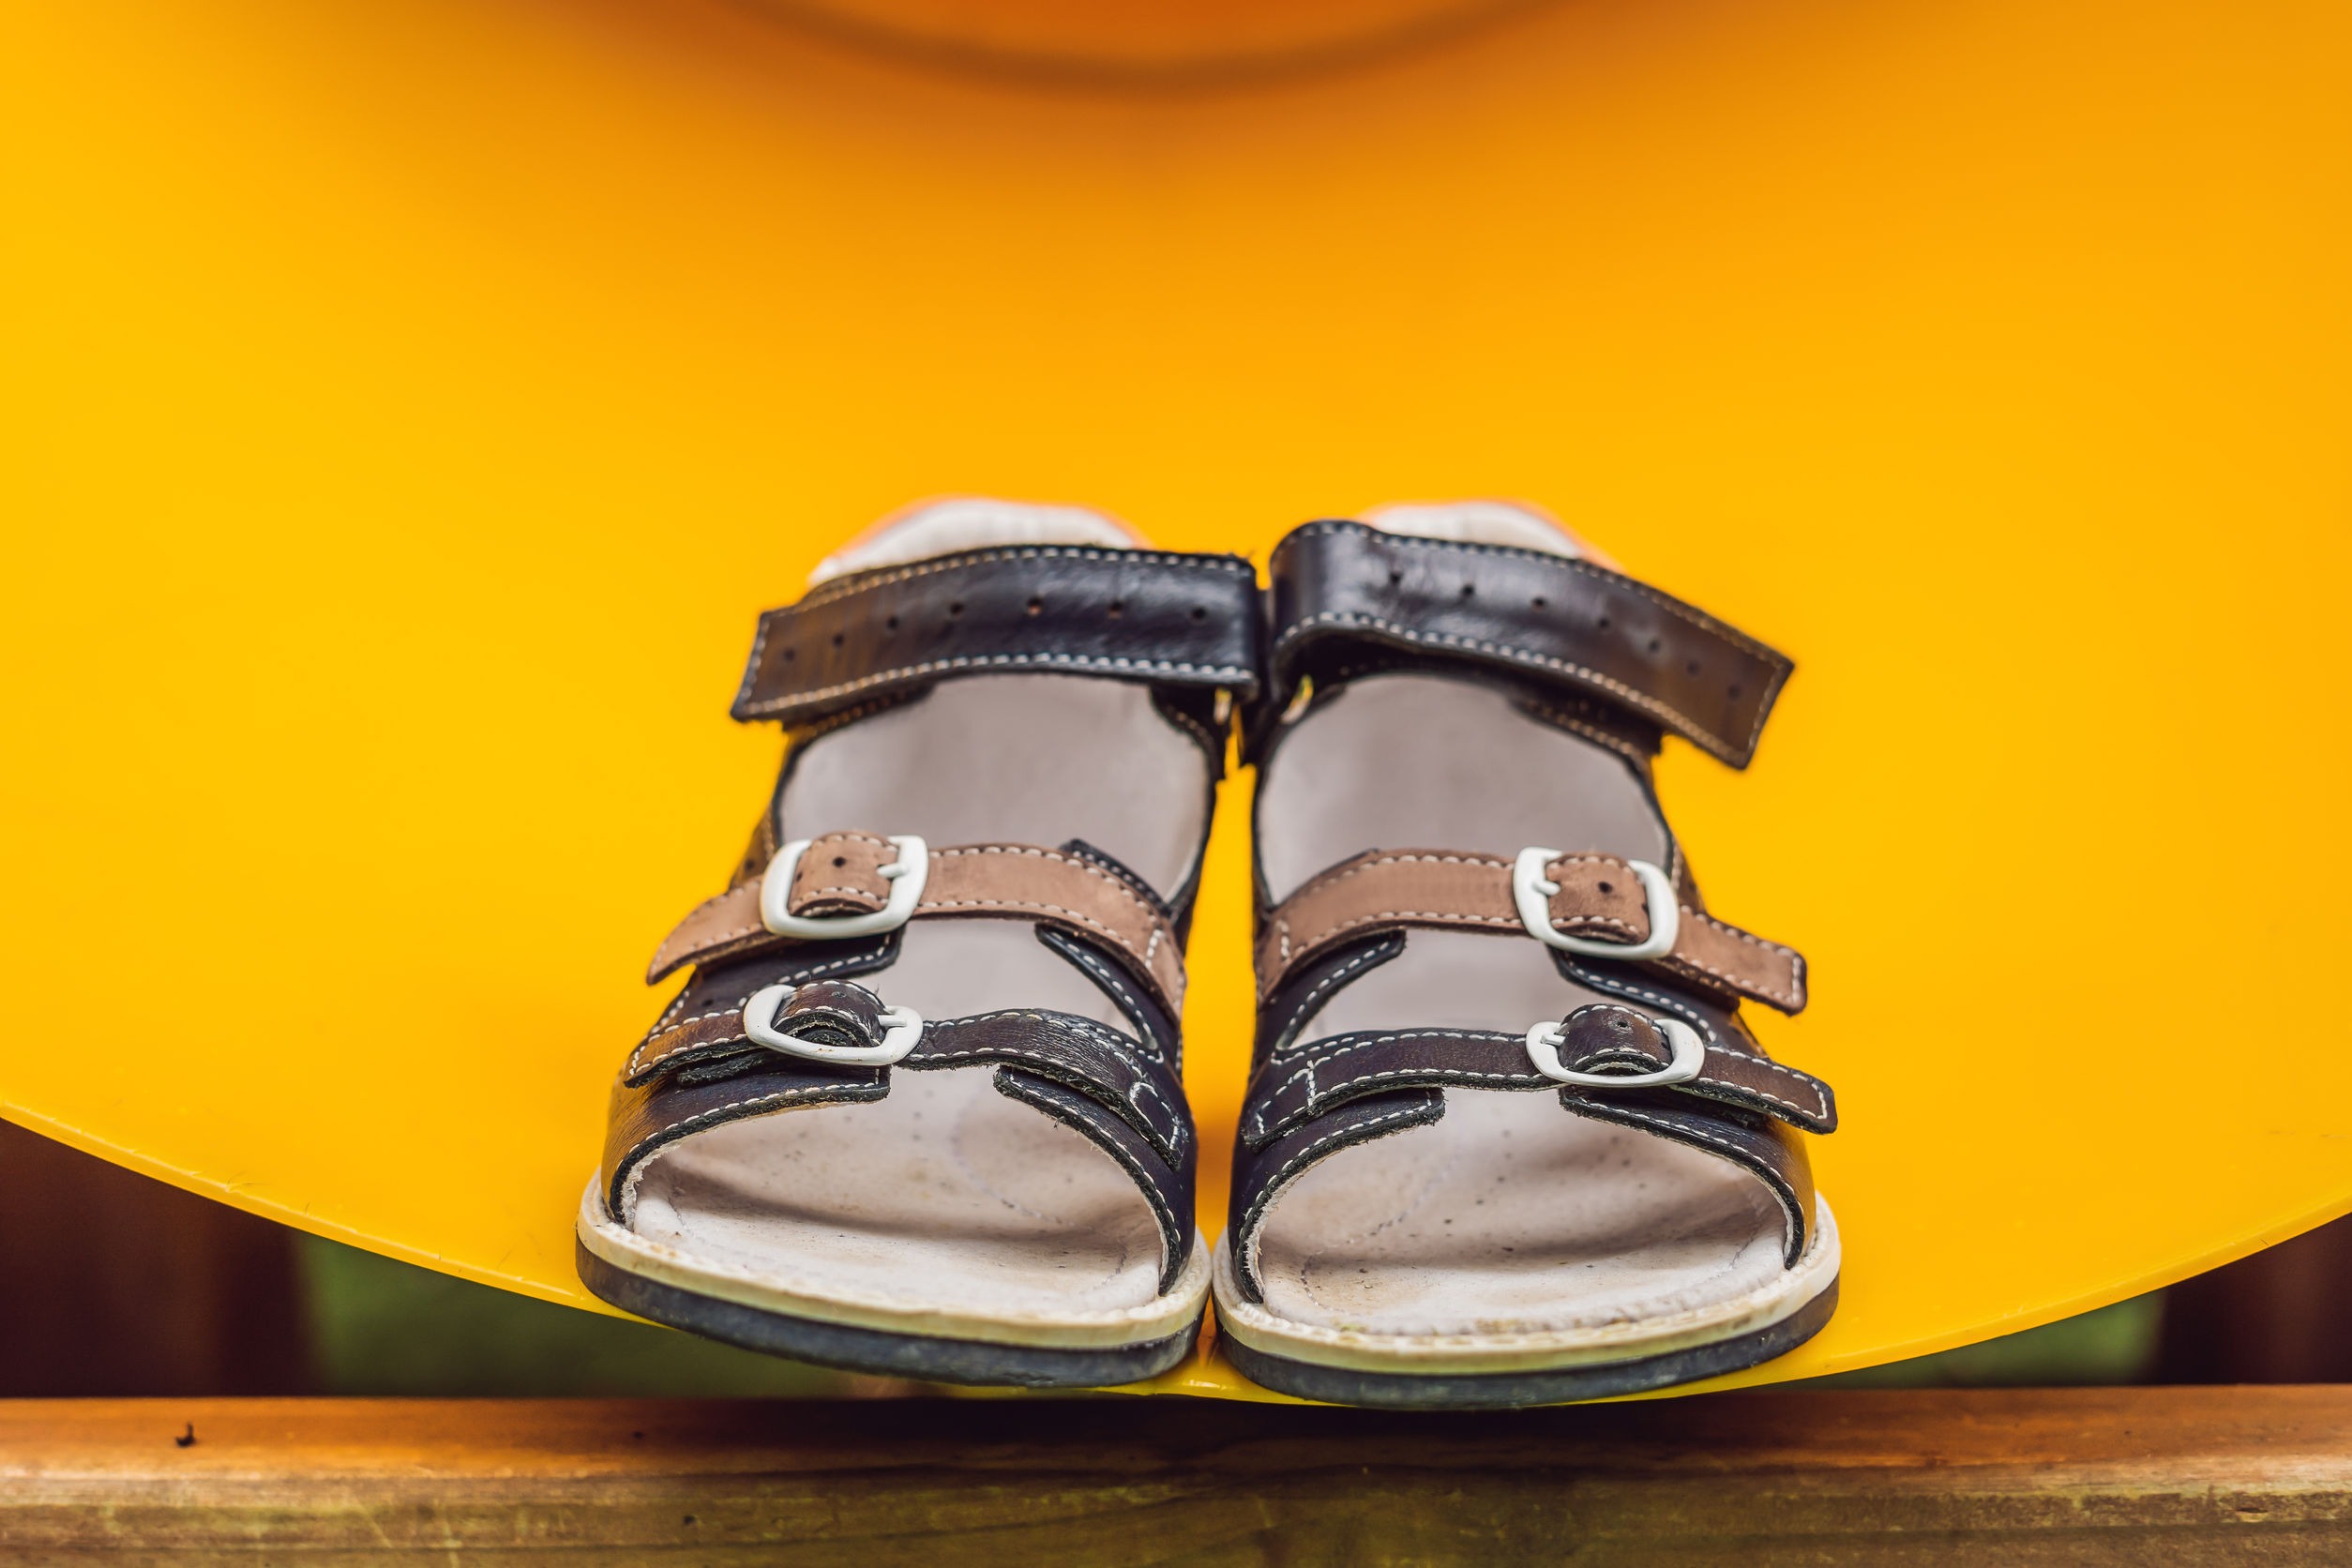 Sandalias niño piel baratas | Comprar calzado infantil - Pequeña Huella